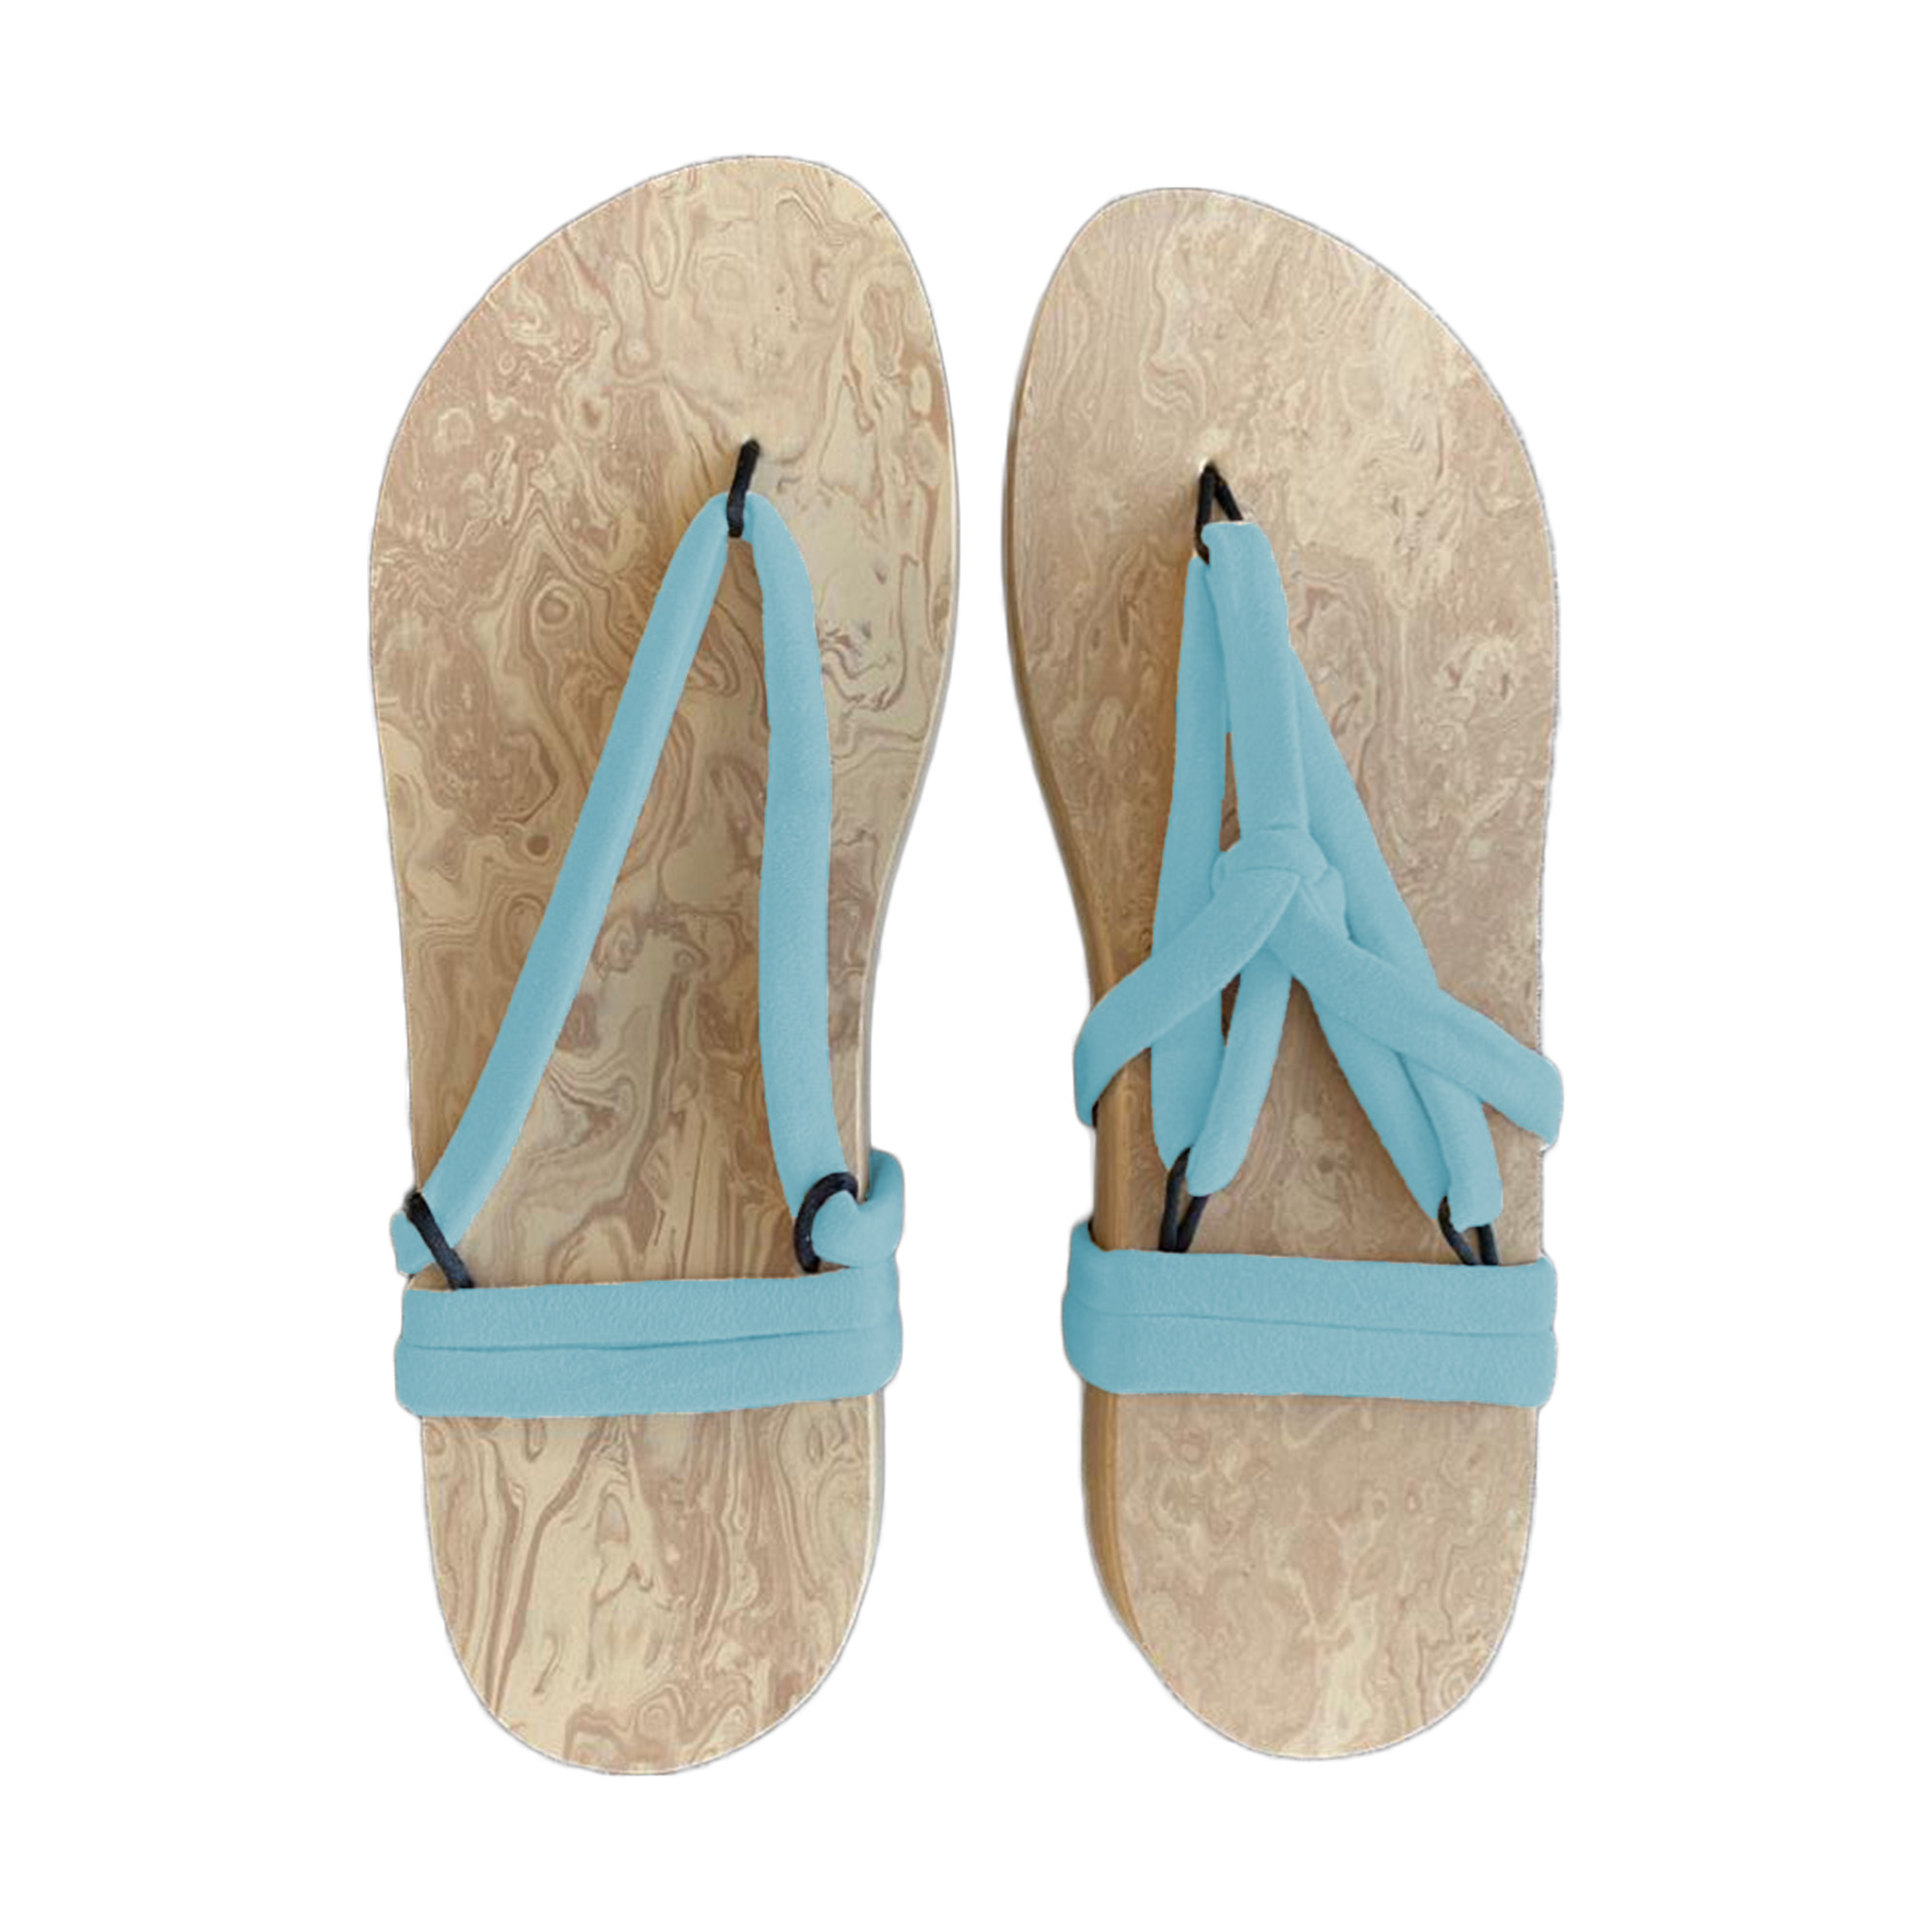 Uitlijnen vasthouden cement ✓ shop online ✓ sandalen ✓ slippers ✓ make your sandals ✓ kwaliteit